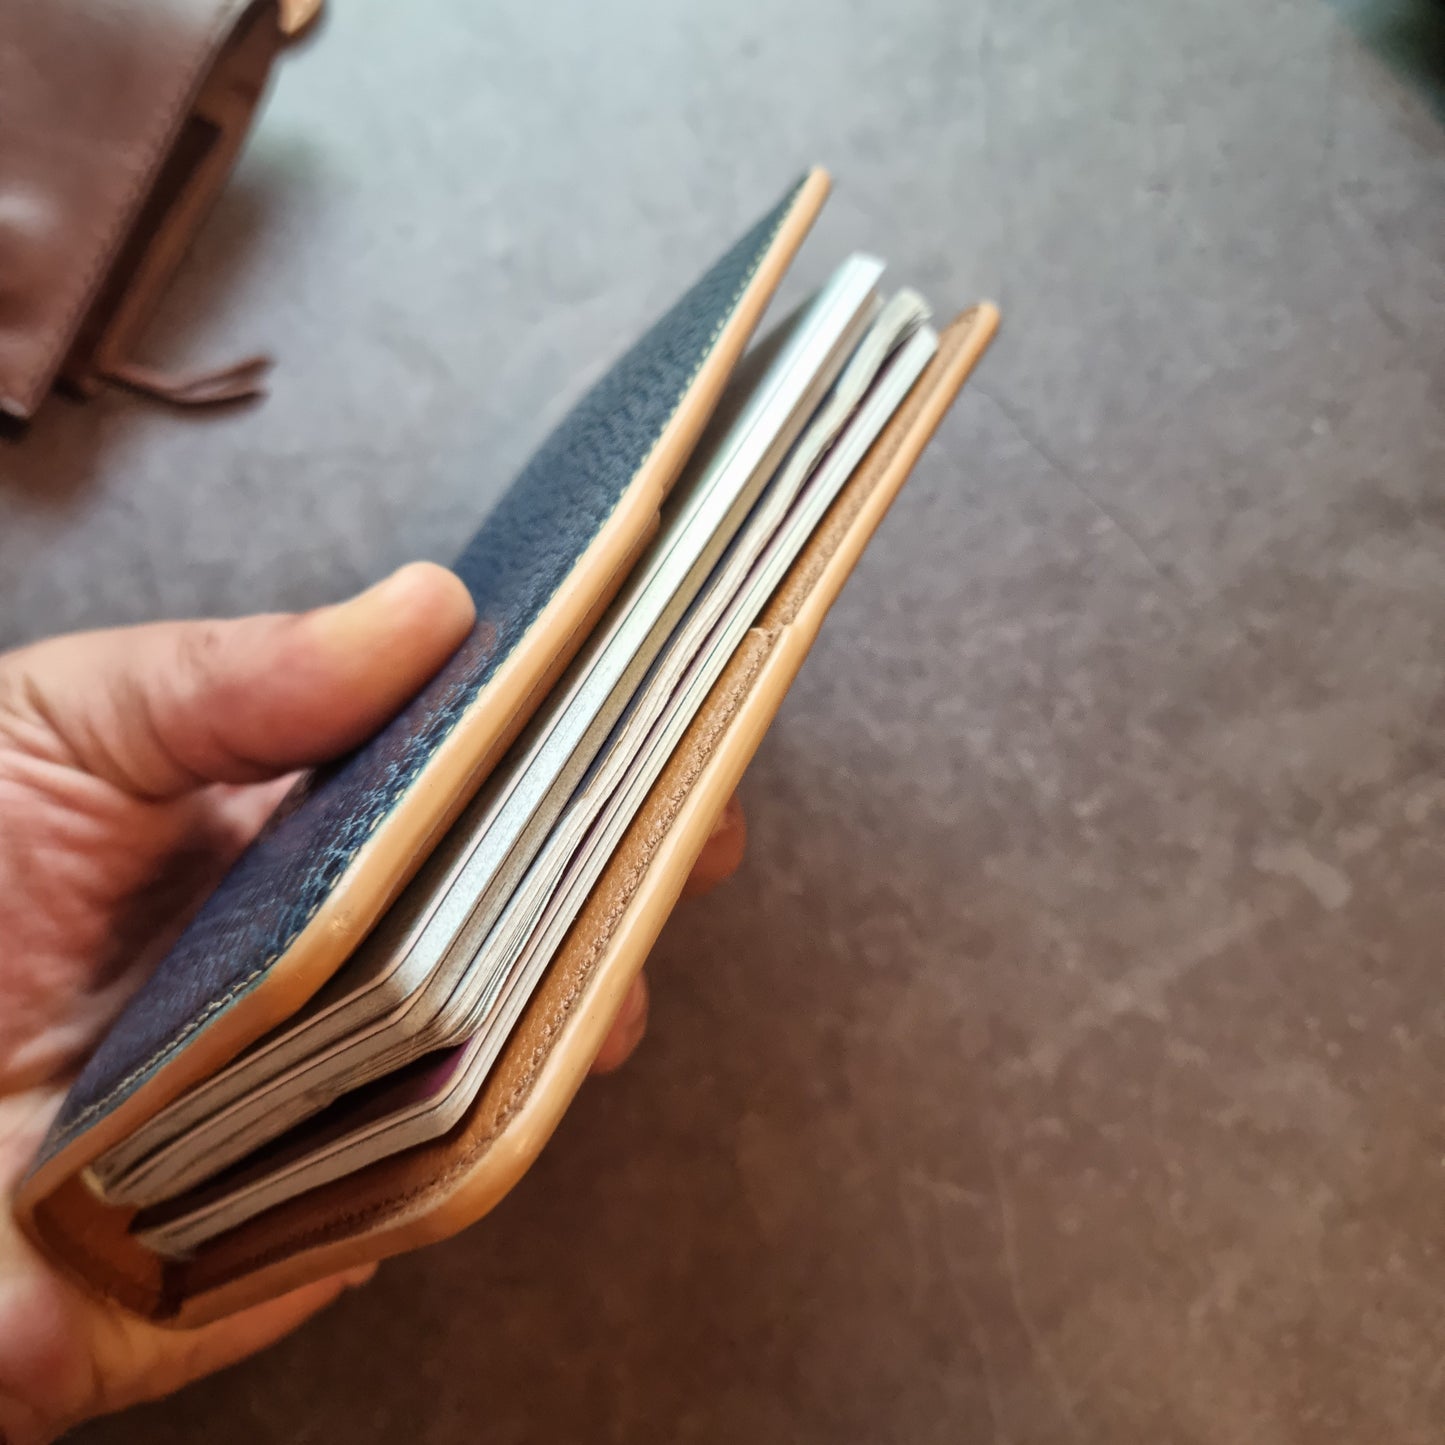 The Kiitää family passport case - Template - PDF Pattern - DIY